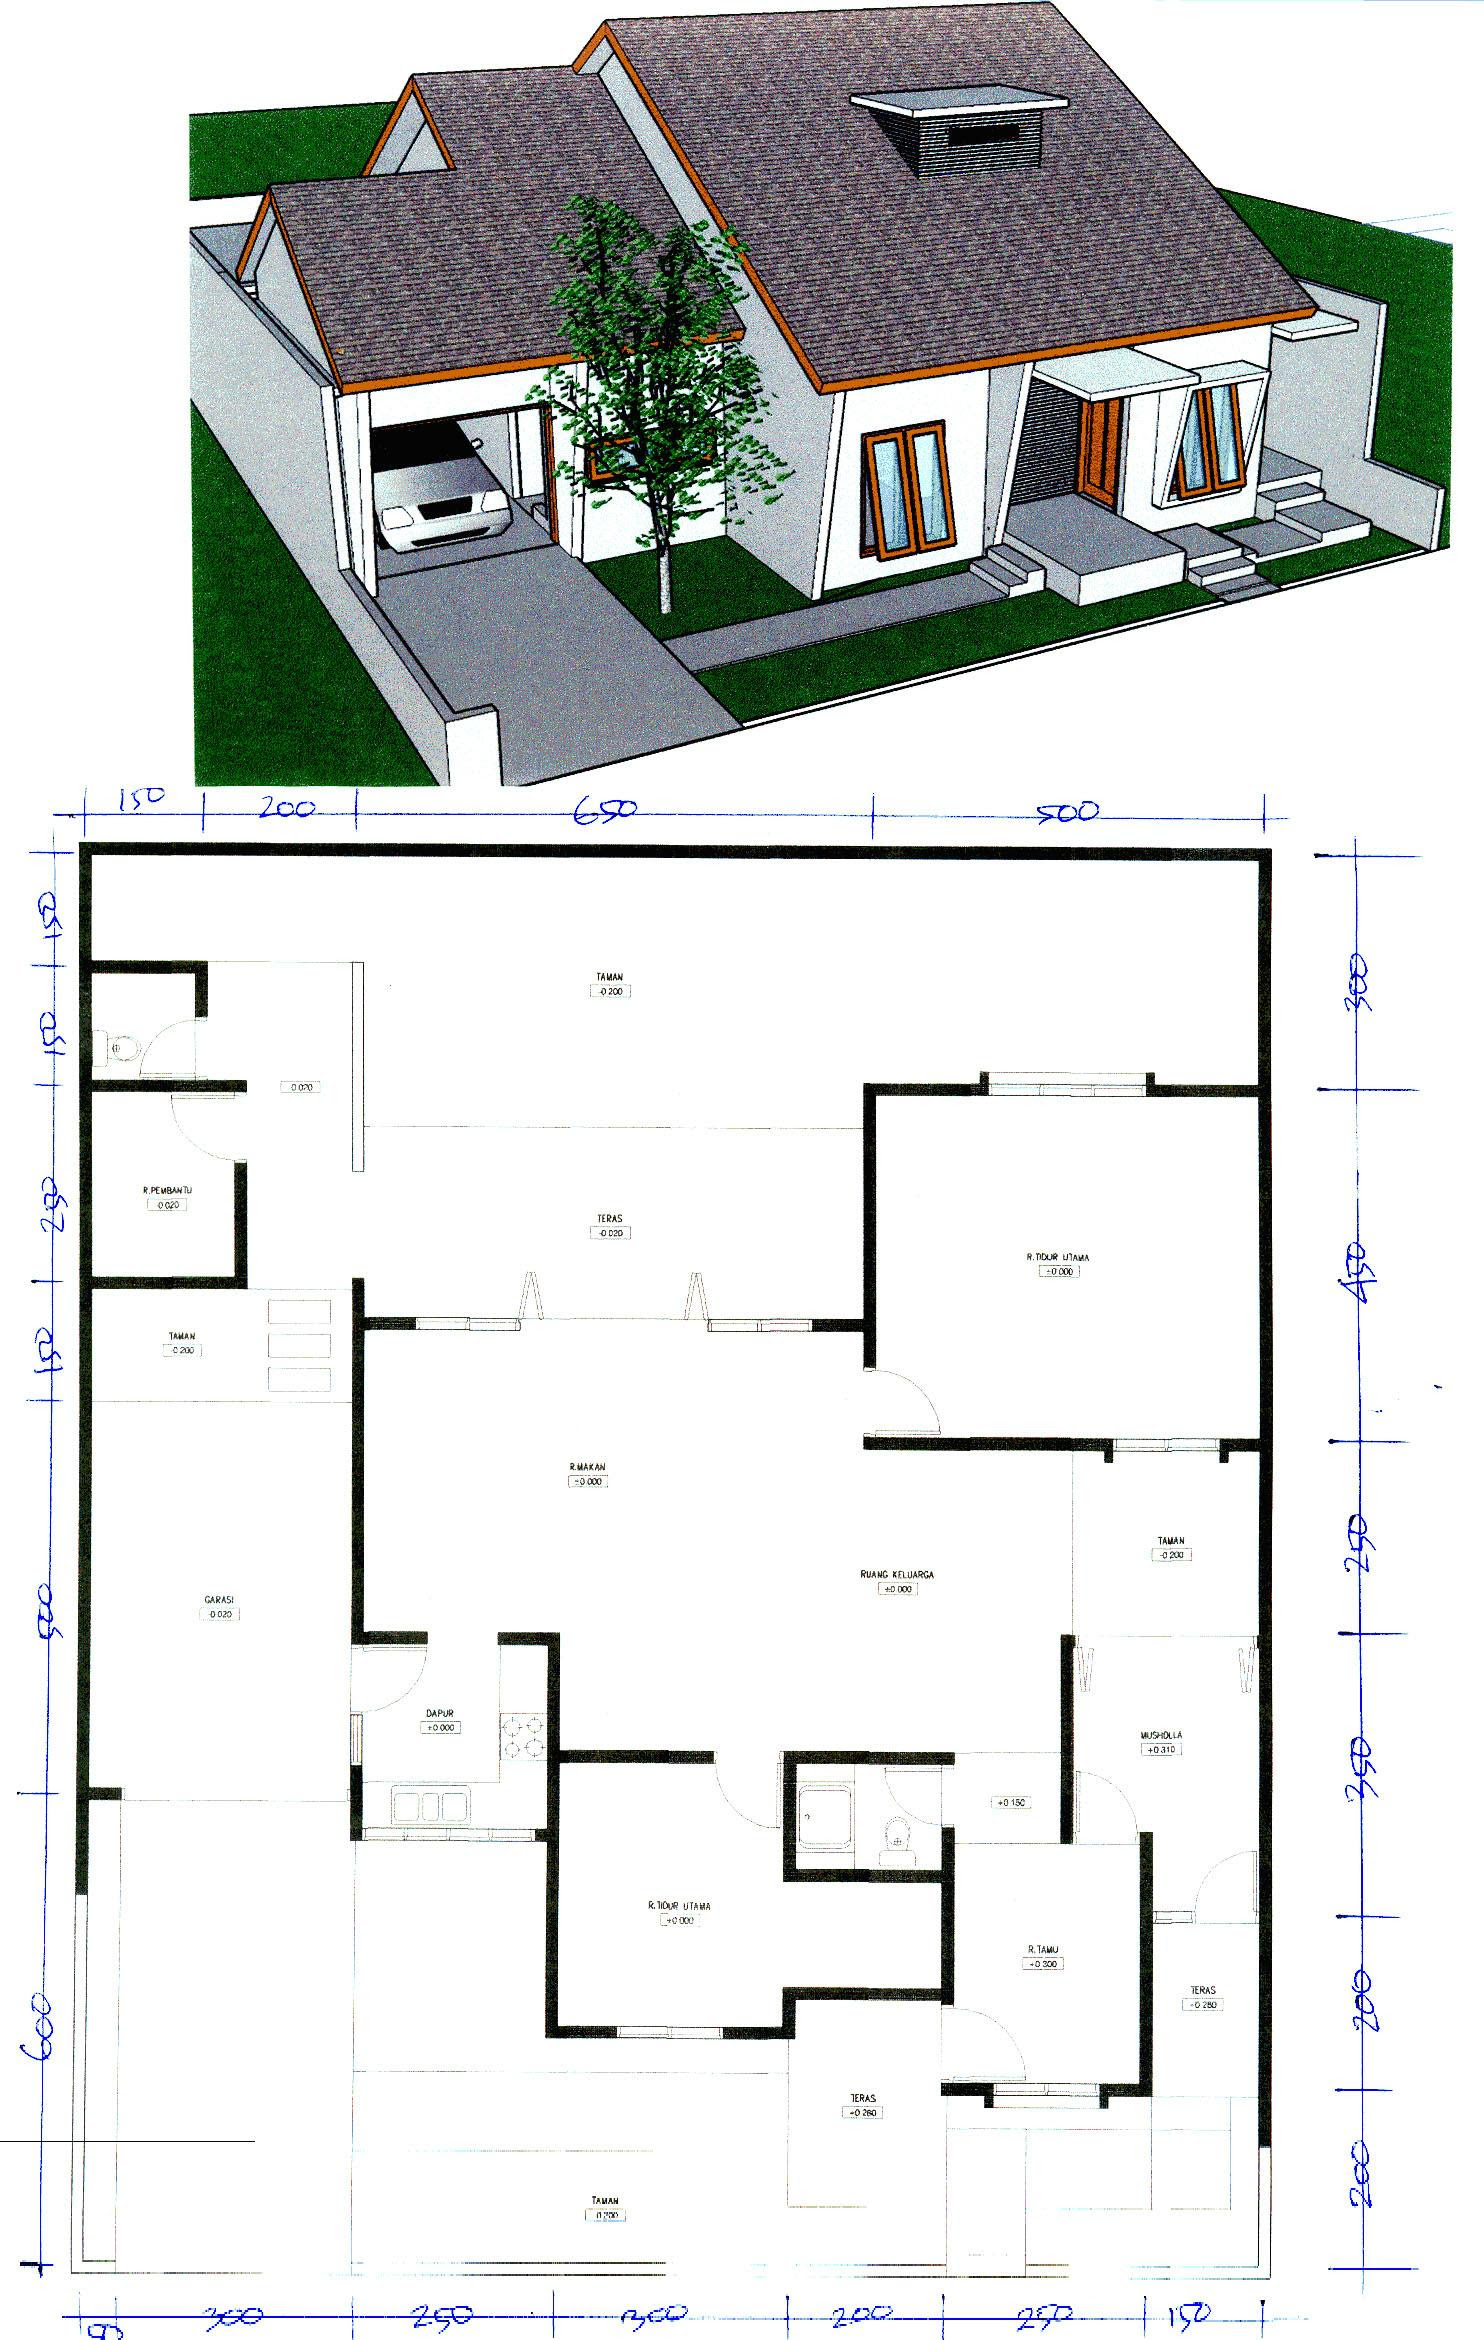 67 Desain Rumah Minimalis Pinggir Jalan Desain Rumah Minimalis